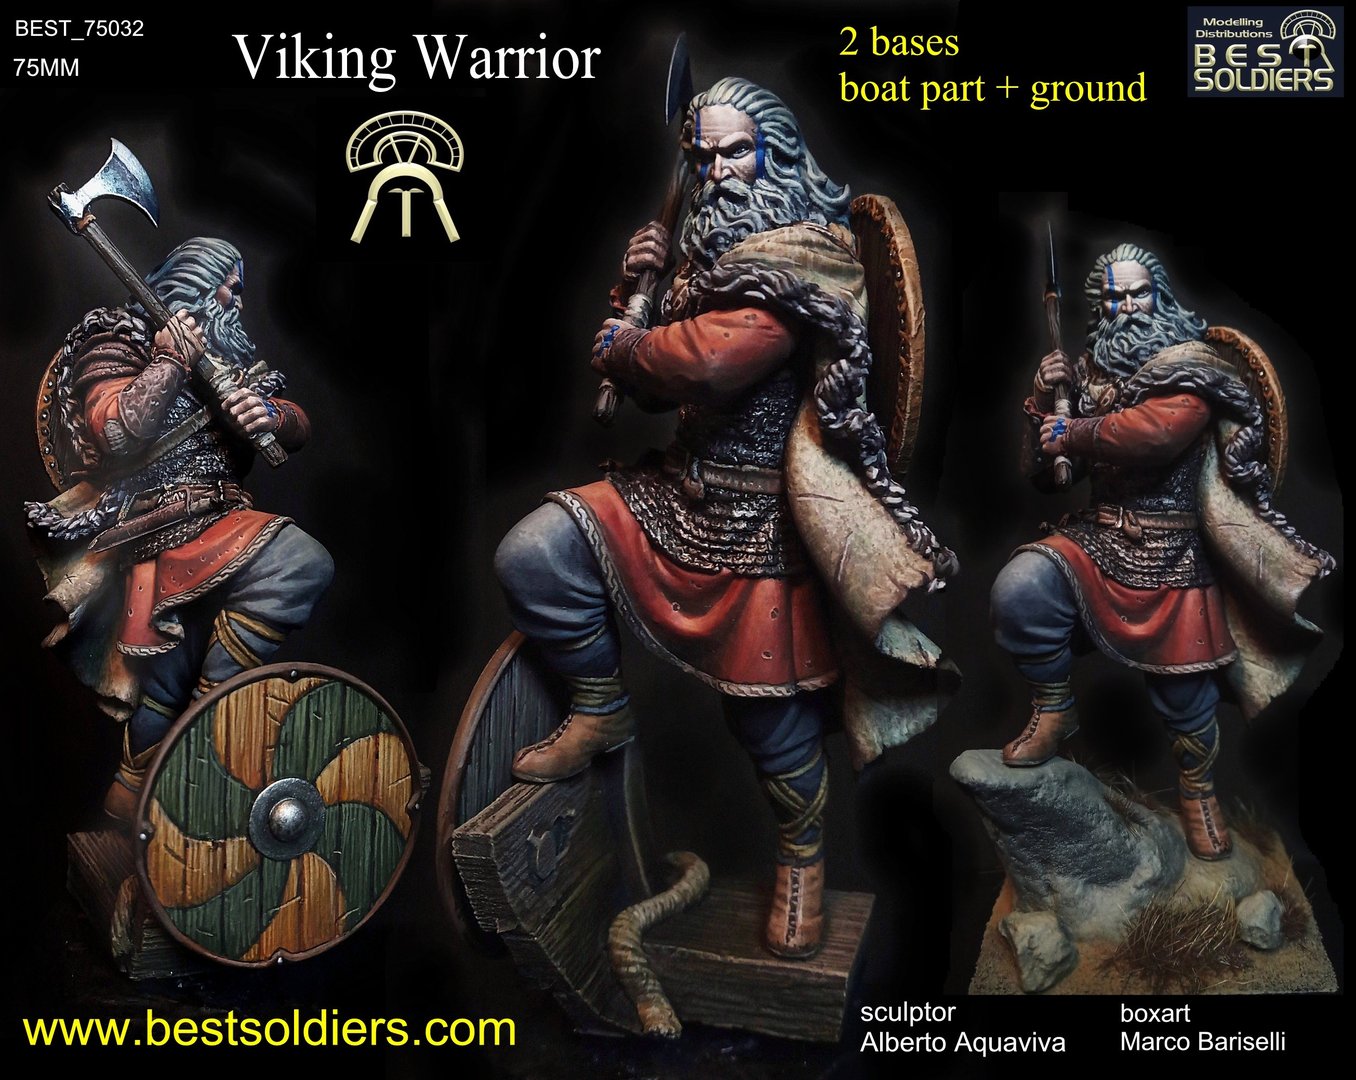 Wiking Warrior